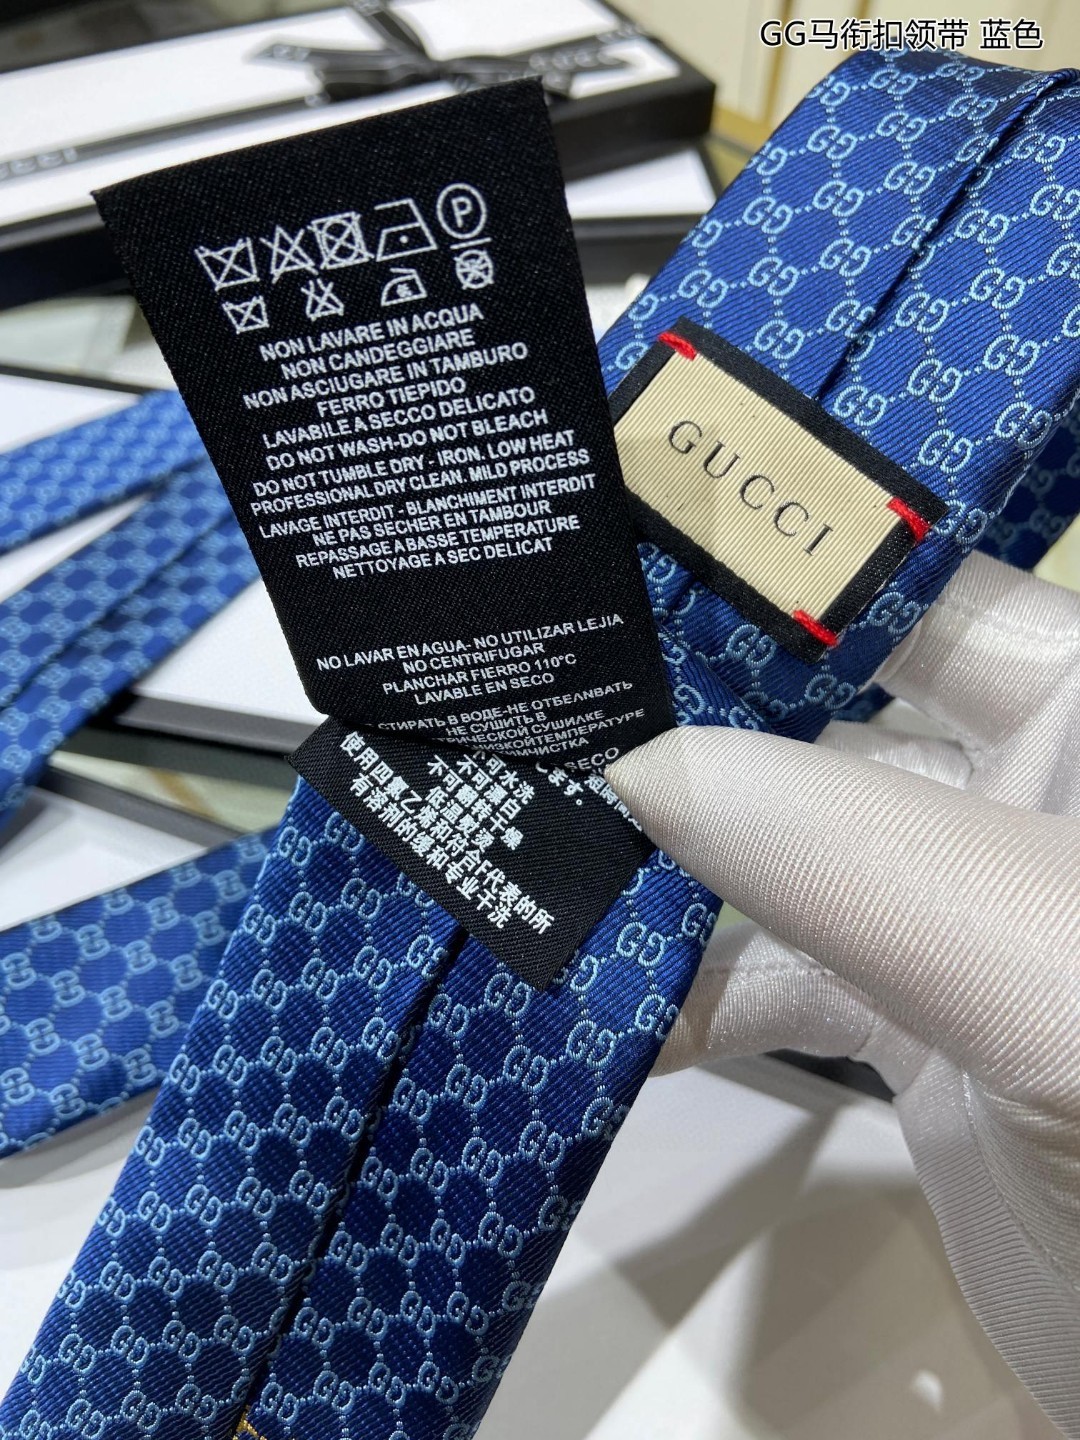 上新特价G家男士领带系列GG马衔扣领带稀有展现精湛手工与时尚优雅的理想选择这款领带将标志性的主题动物小蜜